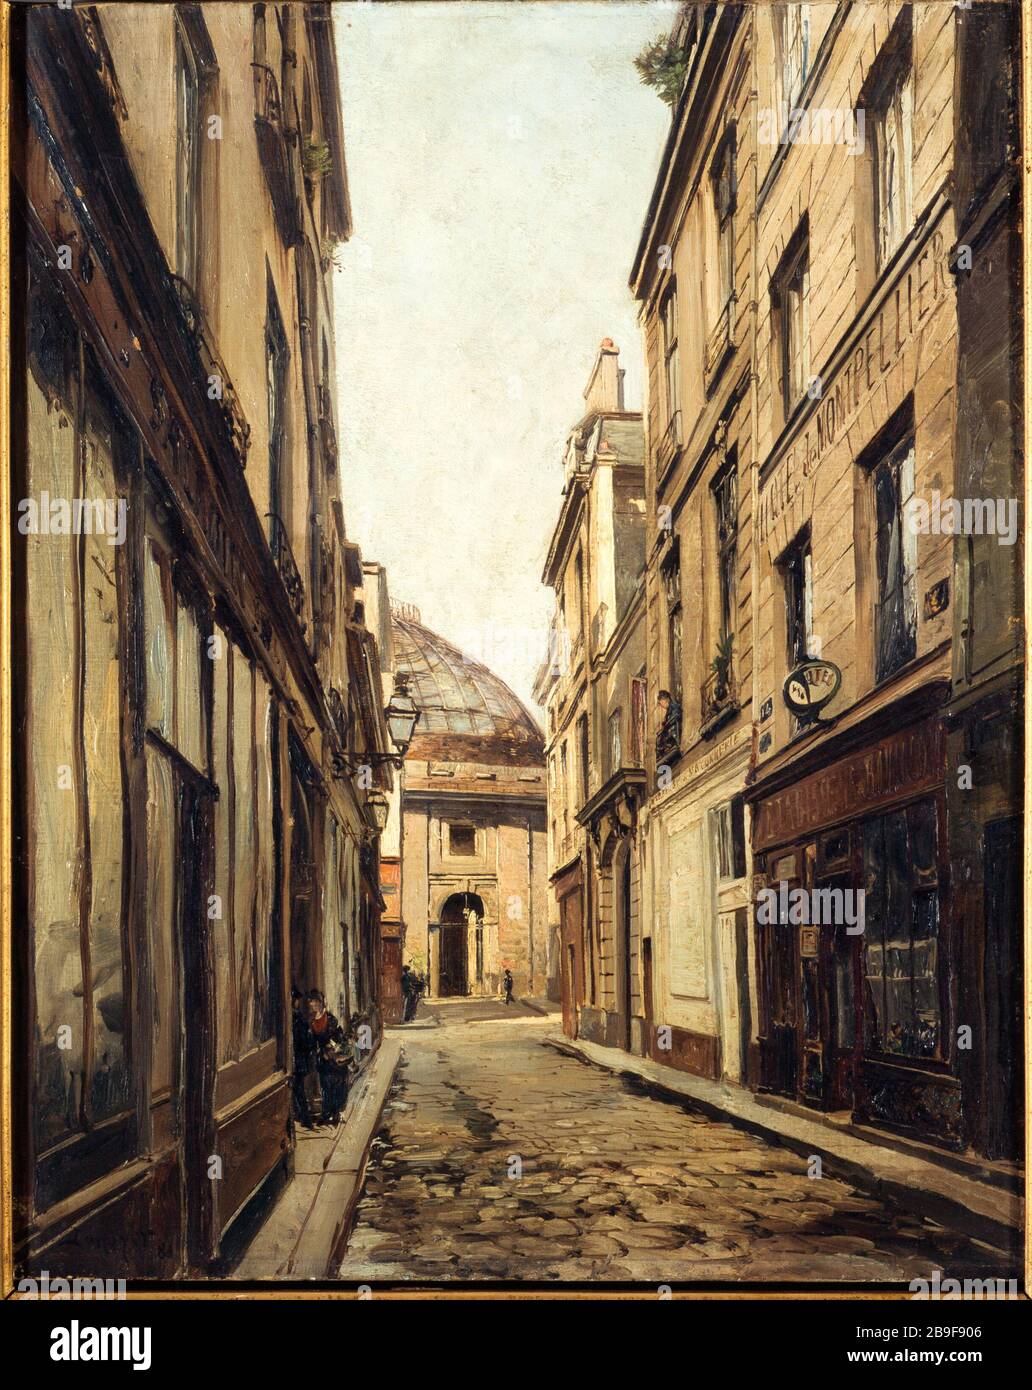 The street Sauval Maurice Emmanuel Lansyer (1835-1893). 'La rue Sauval'. Huile sur toile, 1886. Paris, musée Carnavalet. Stock Photo